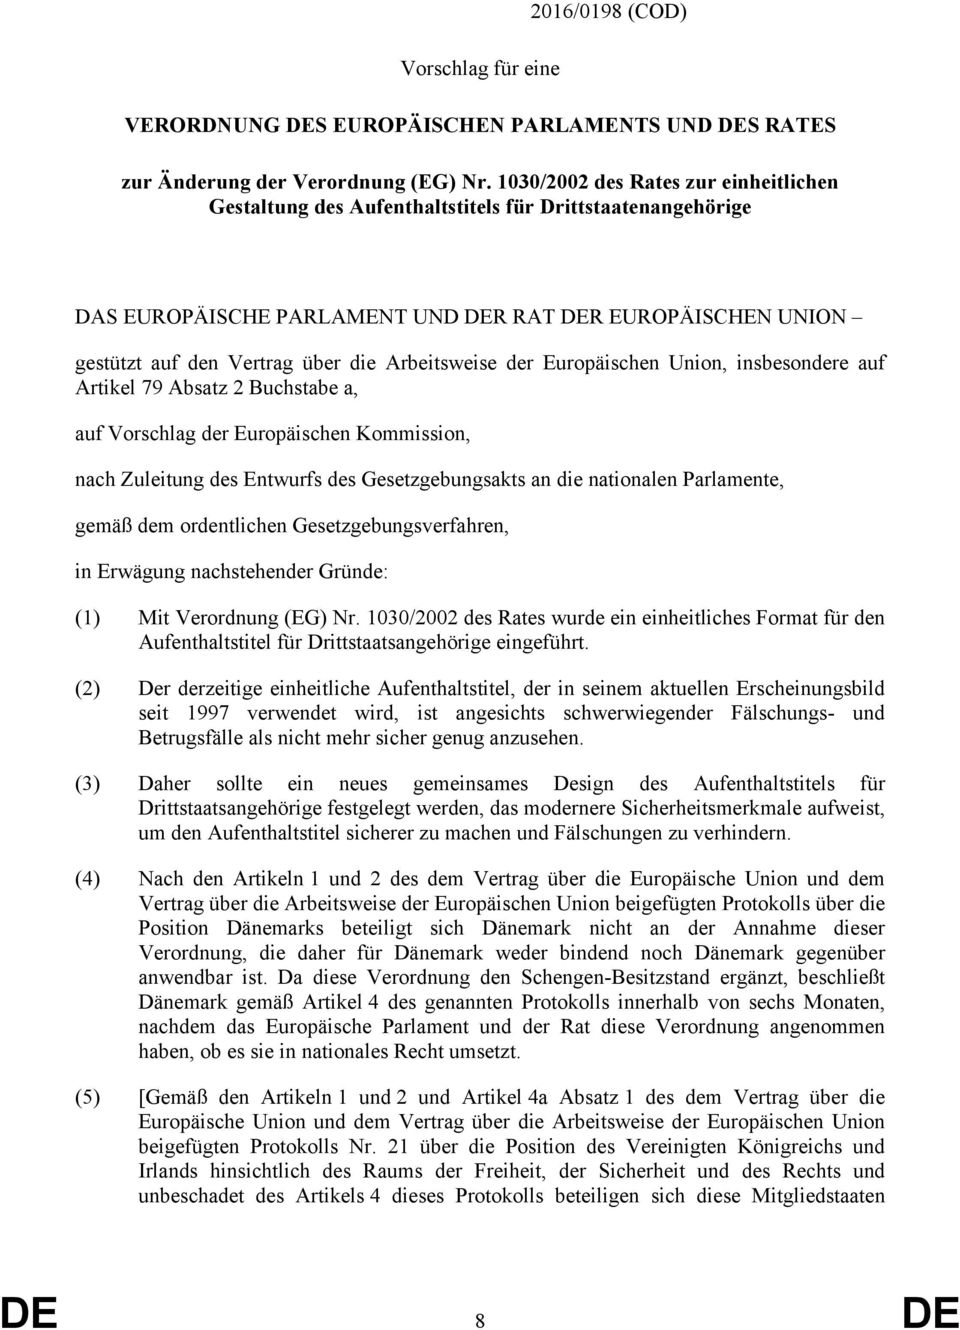 Arbeitsweise der Europäischen Union, insbesondere auf Artikel 79 Absatz 2 Buchstabe a, auf Vorschlag der Europäischen Kommission, nach Zuleitung des Entwurfs des Gesetzgebungsakts an die nationalen